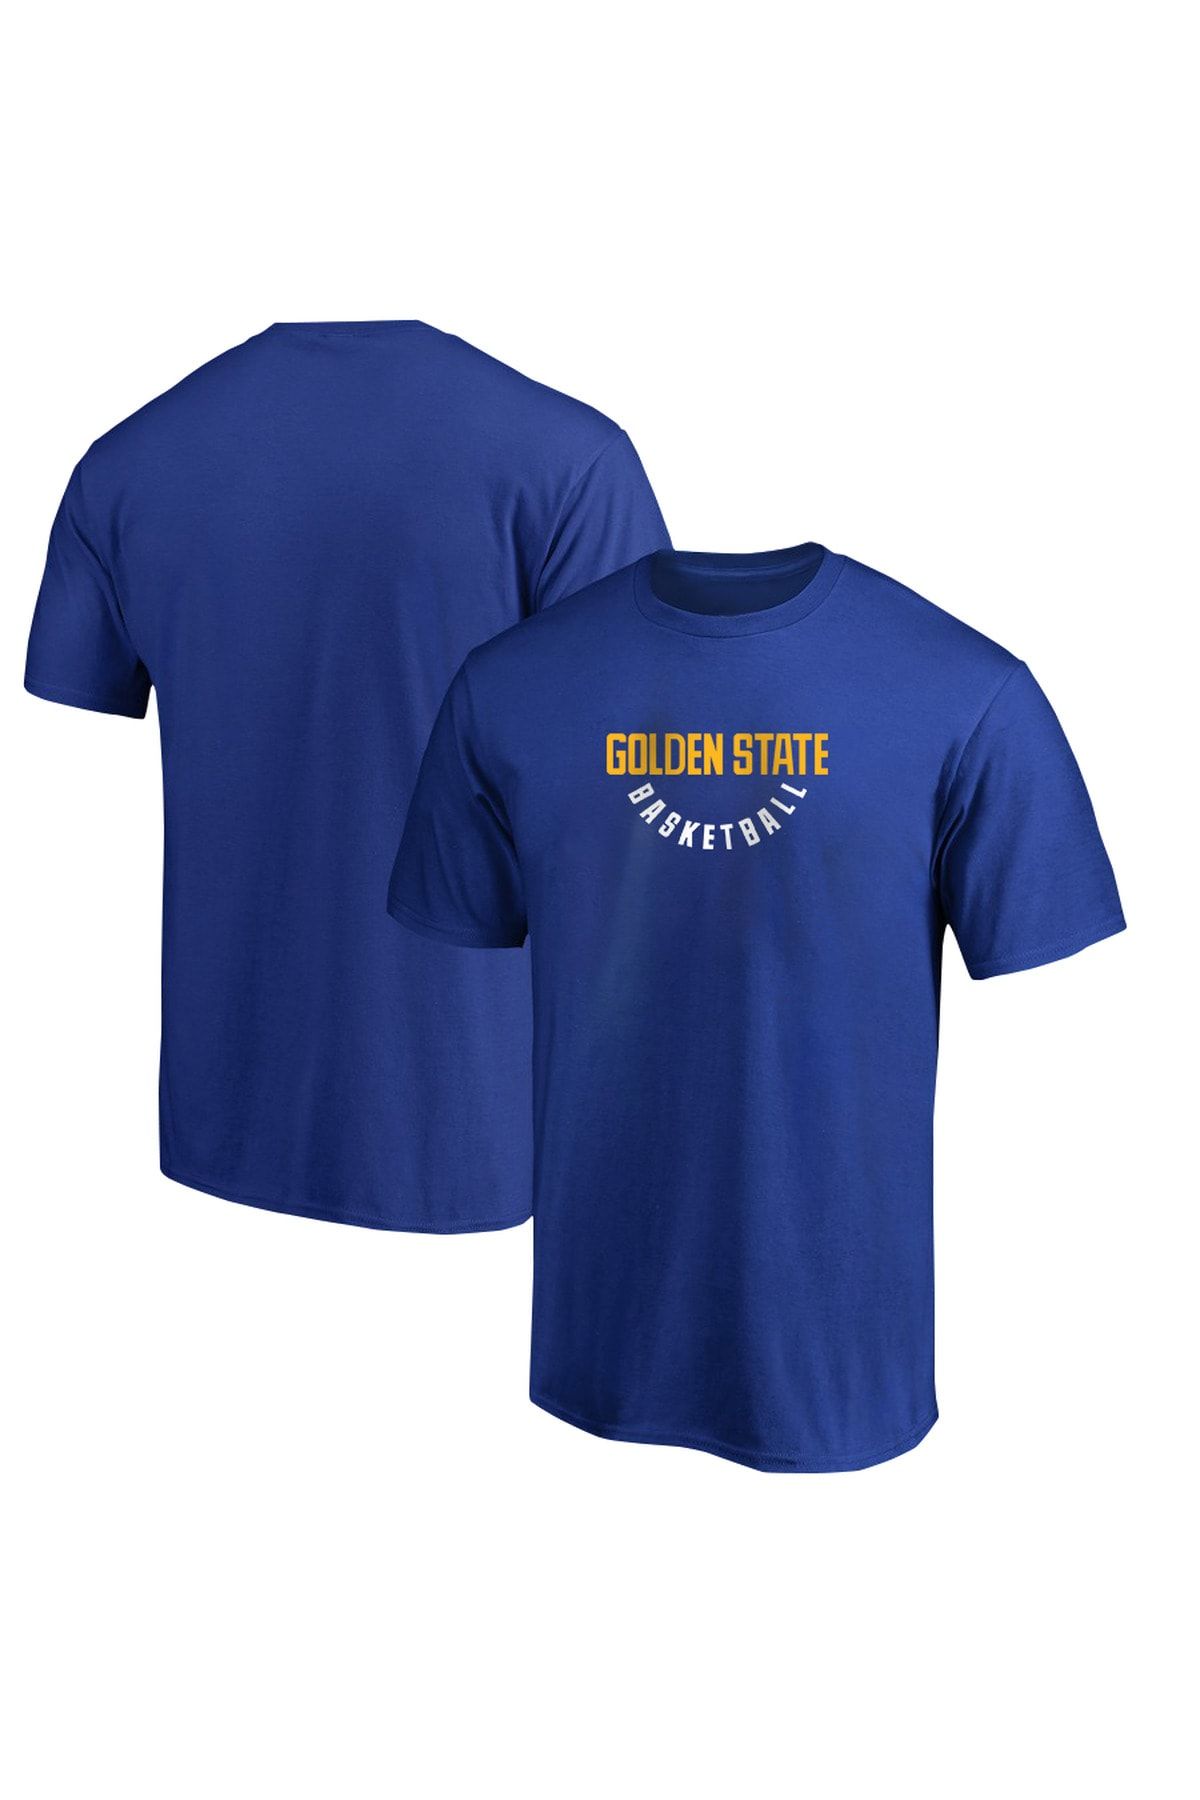 Usateamfans Golden State Tshirt